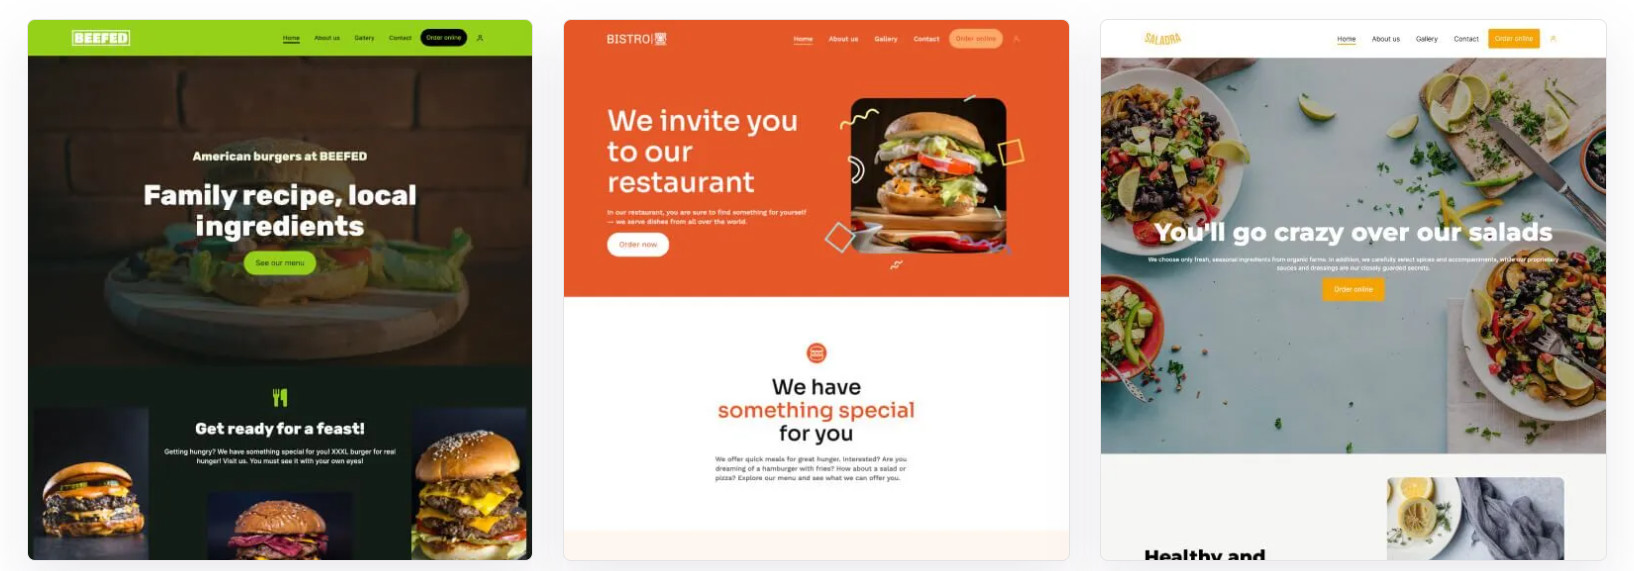 promocja restauracji - szablony stron internetowych